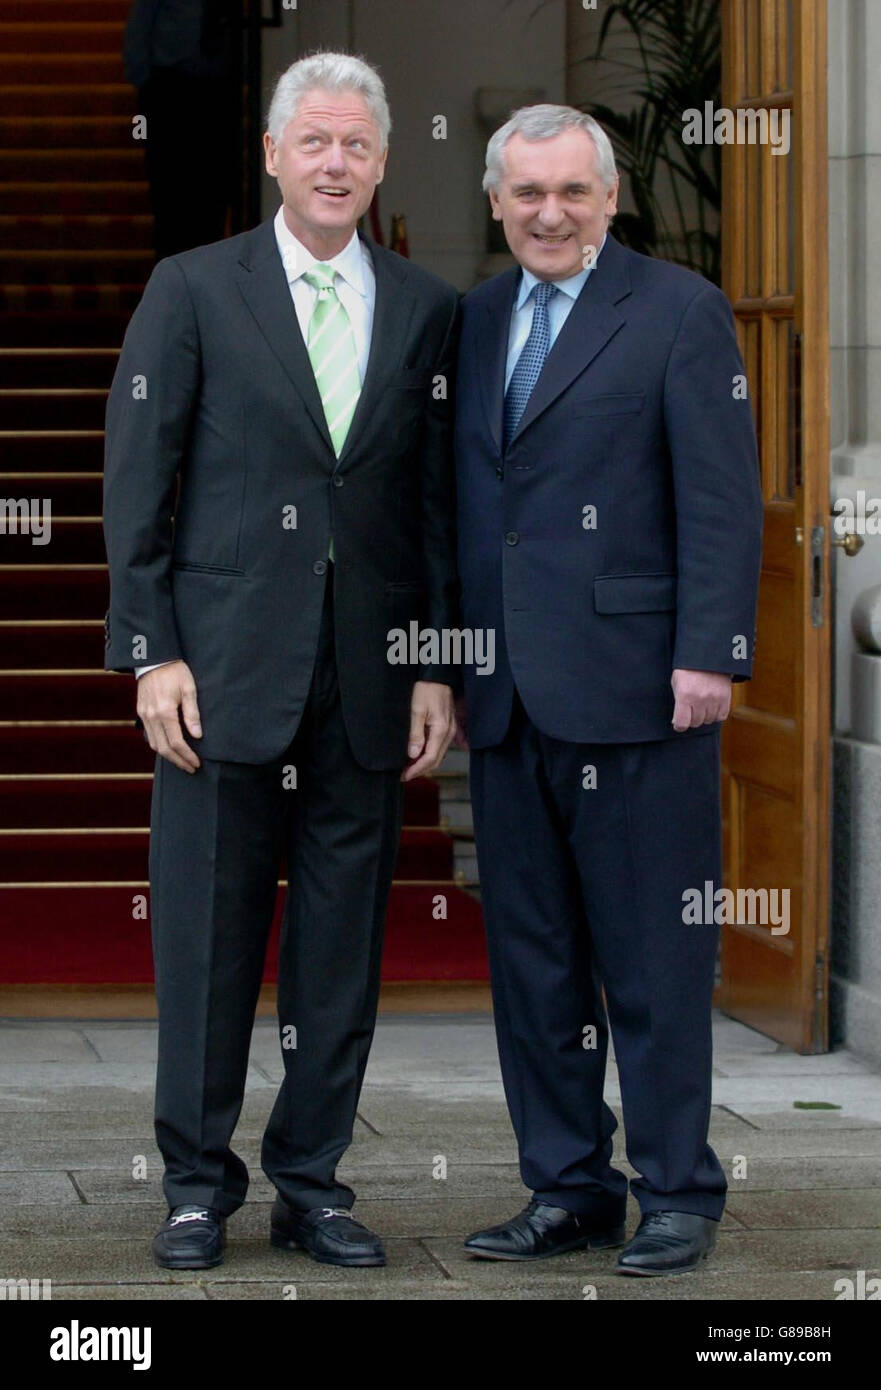 (Links-rechts) der ehemalige US-Präsident Bill Clinton und der irische Premierminister Bertie Ahern vor den Regierungsgebäuden, bevor der ehemalige US-Präsident auf einer Konferenz im City West Hotel in Dublin, Irland, sprach. Stockfoto